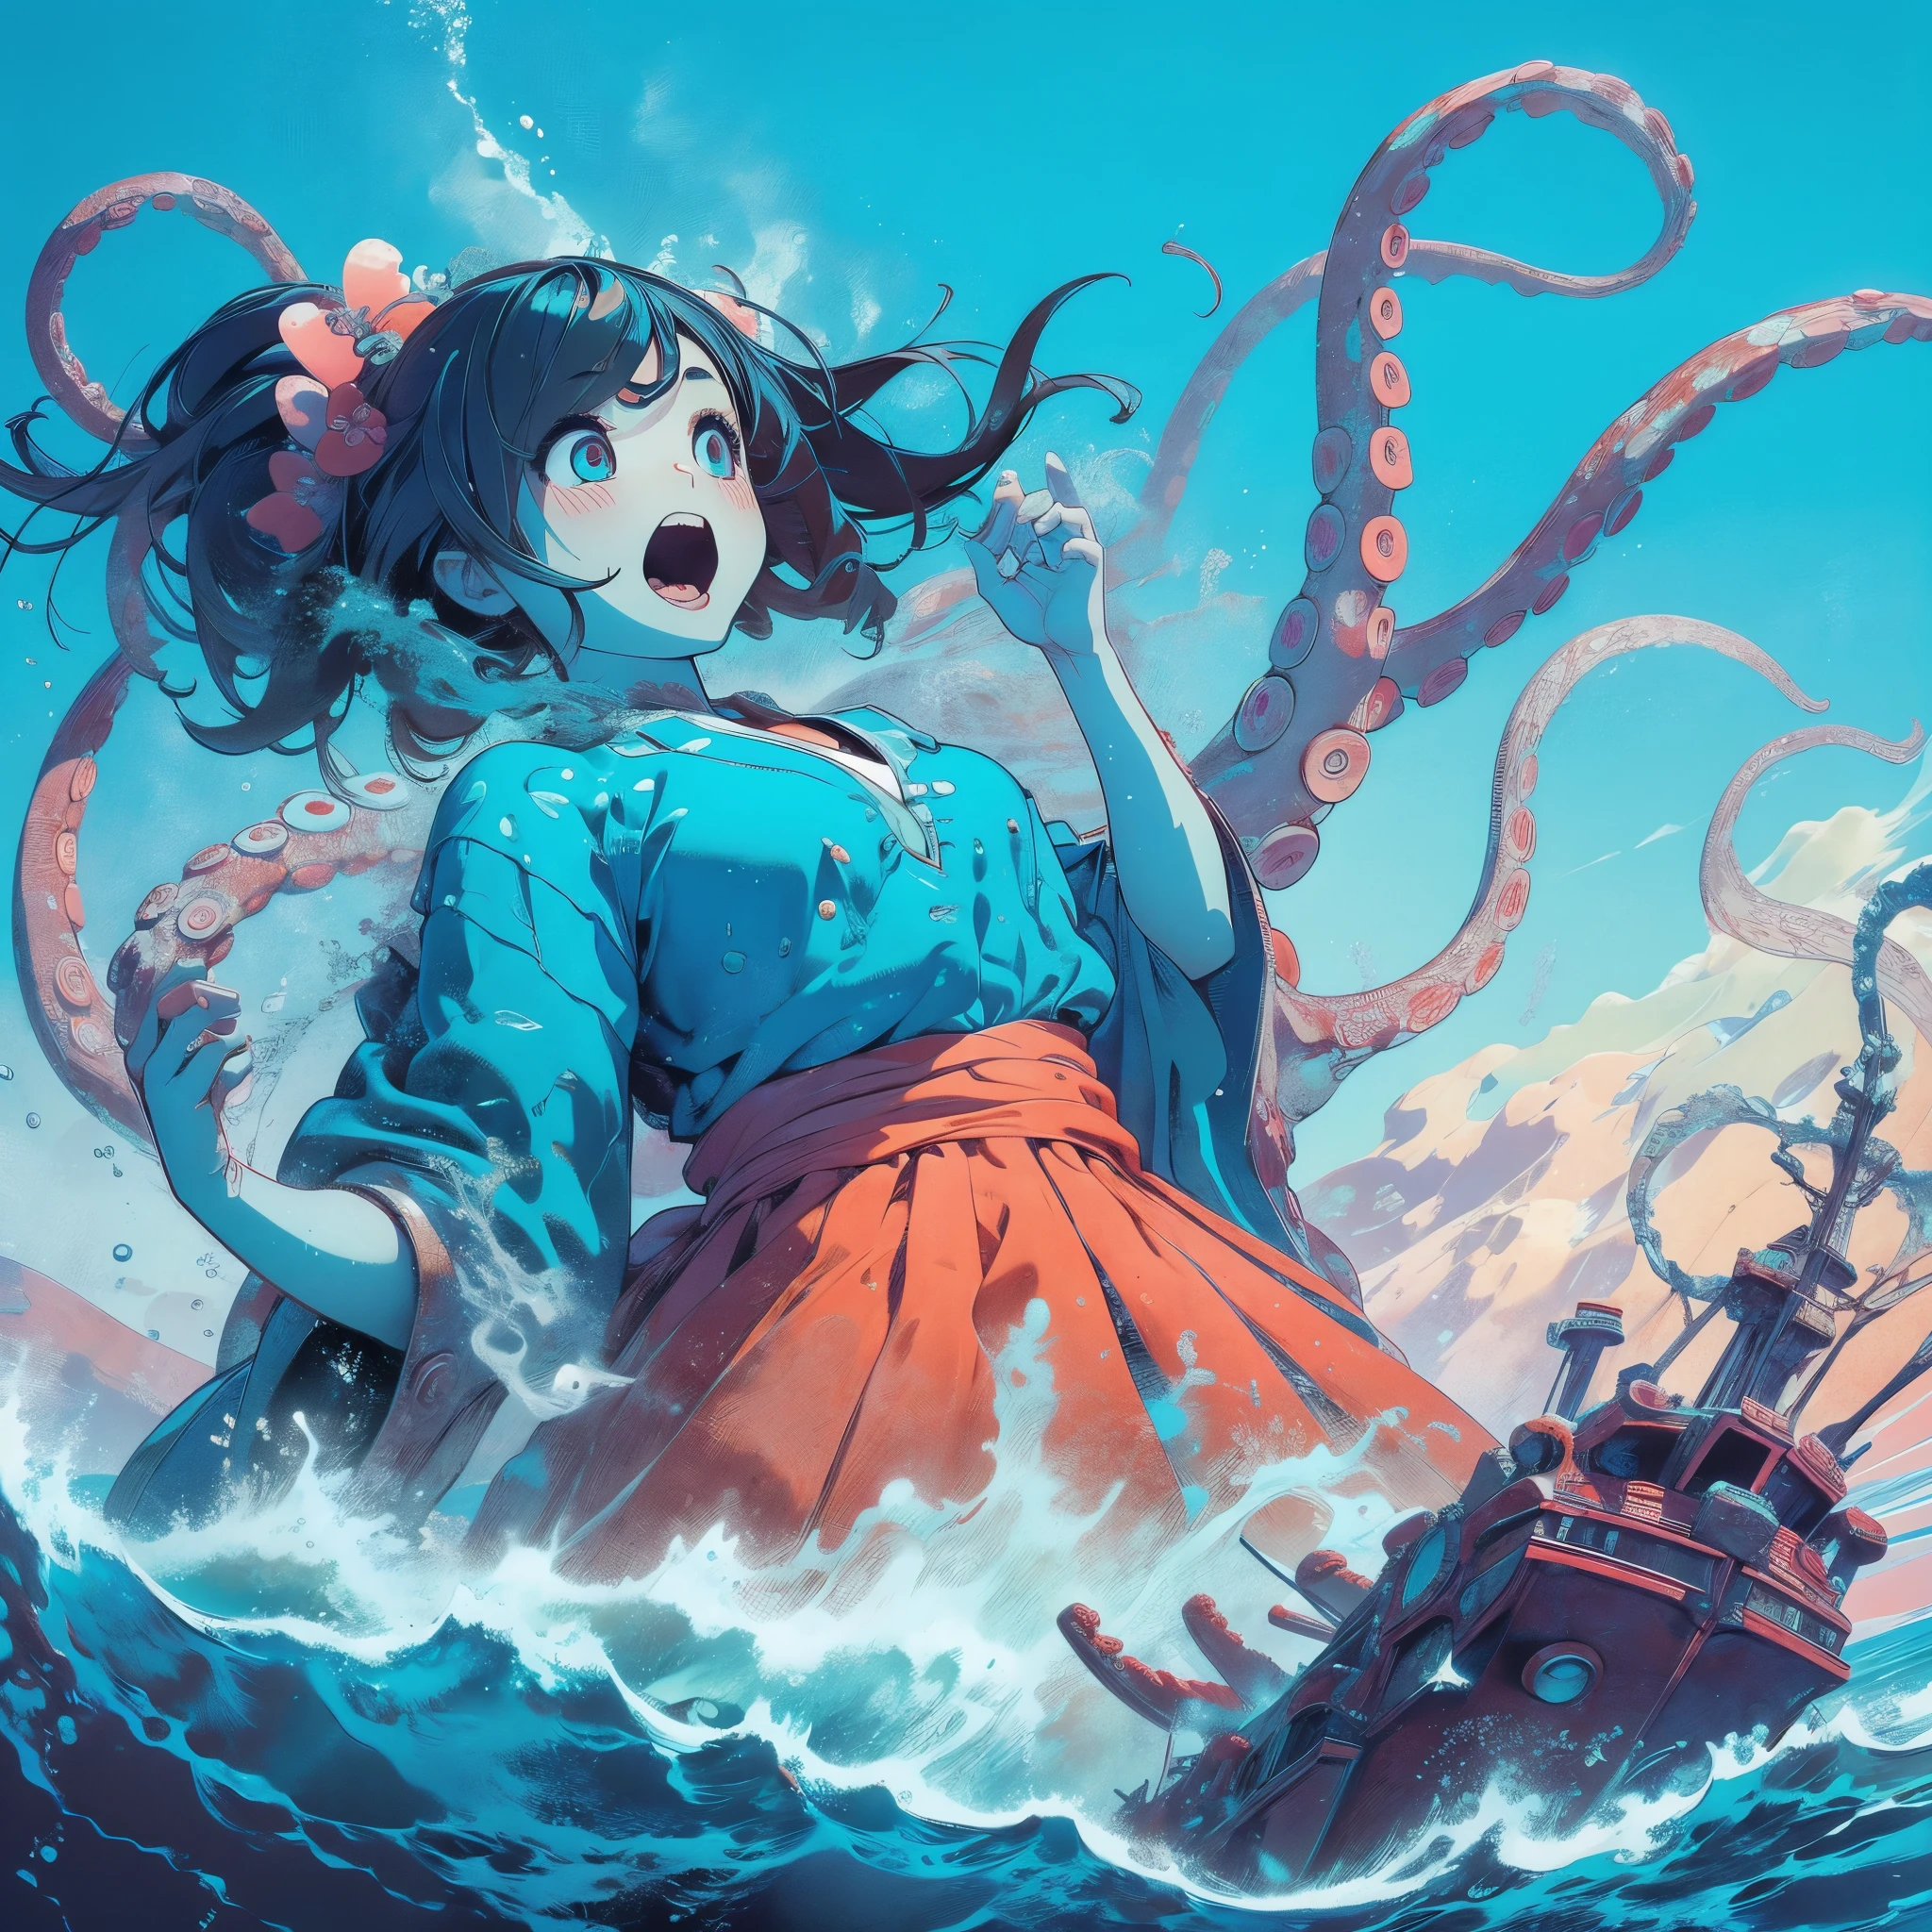 océano. chica gigante. Ataques desde debajo de la superficie. Una niña atacando un barco.. Tentáculos en el fondo del océano. nadar. Un estilo.